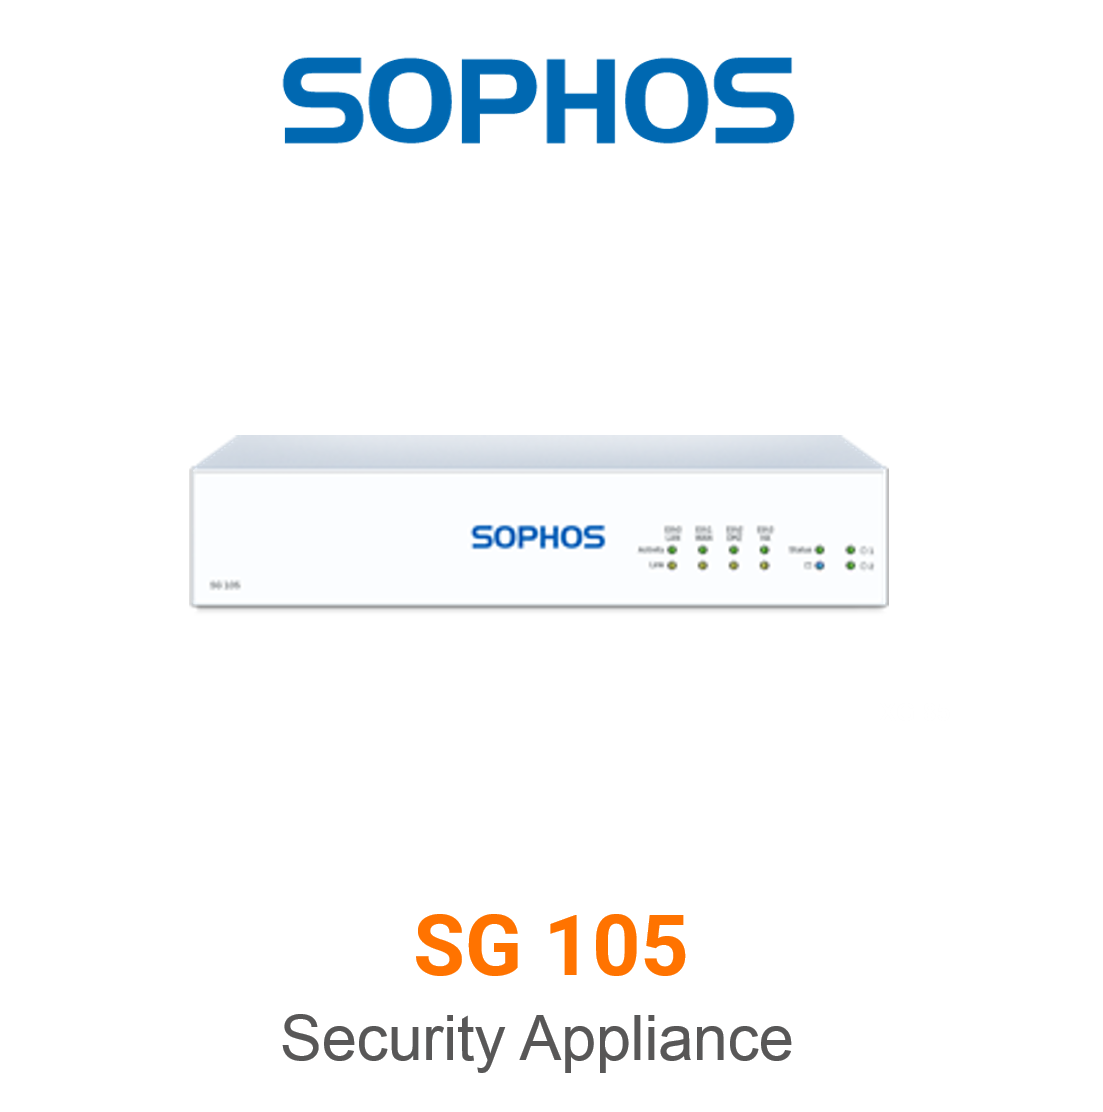 Sophos SG 105 Security Appliance Vorschaubild mit Sophos logo und Modellbezeichnung